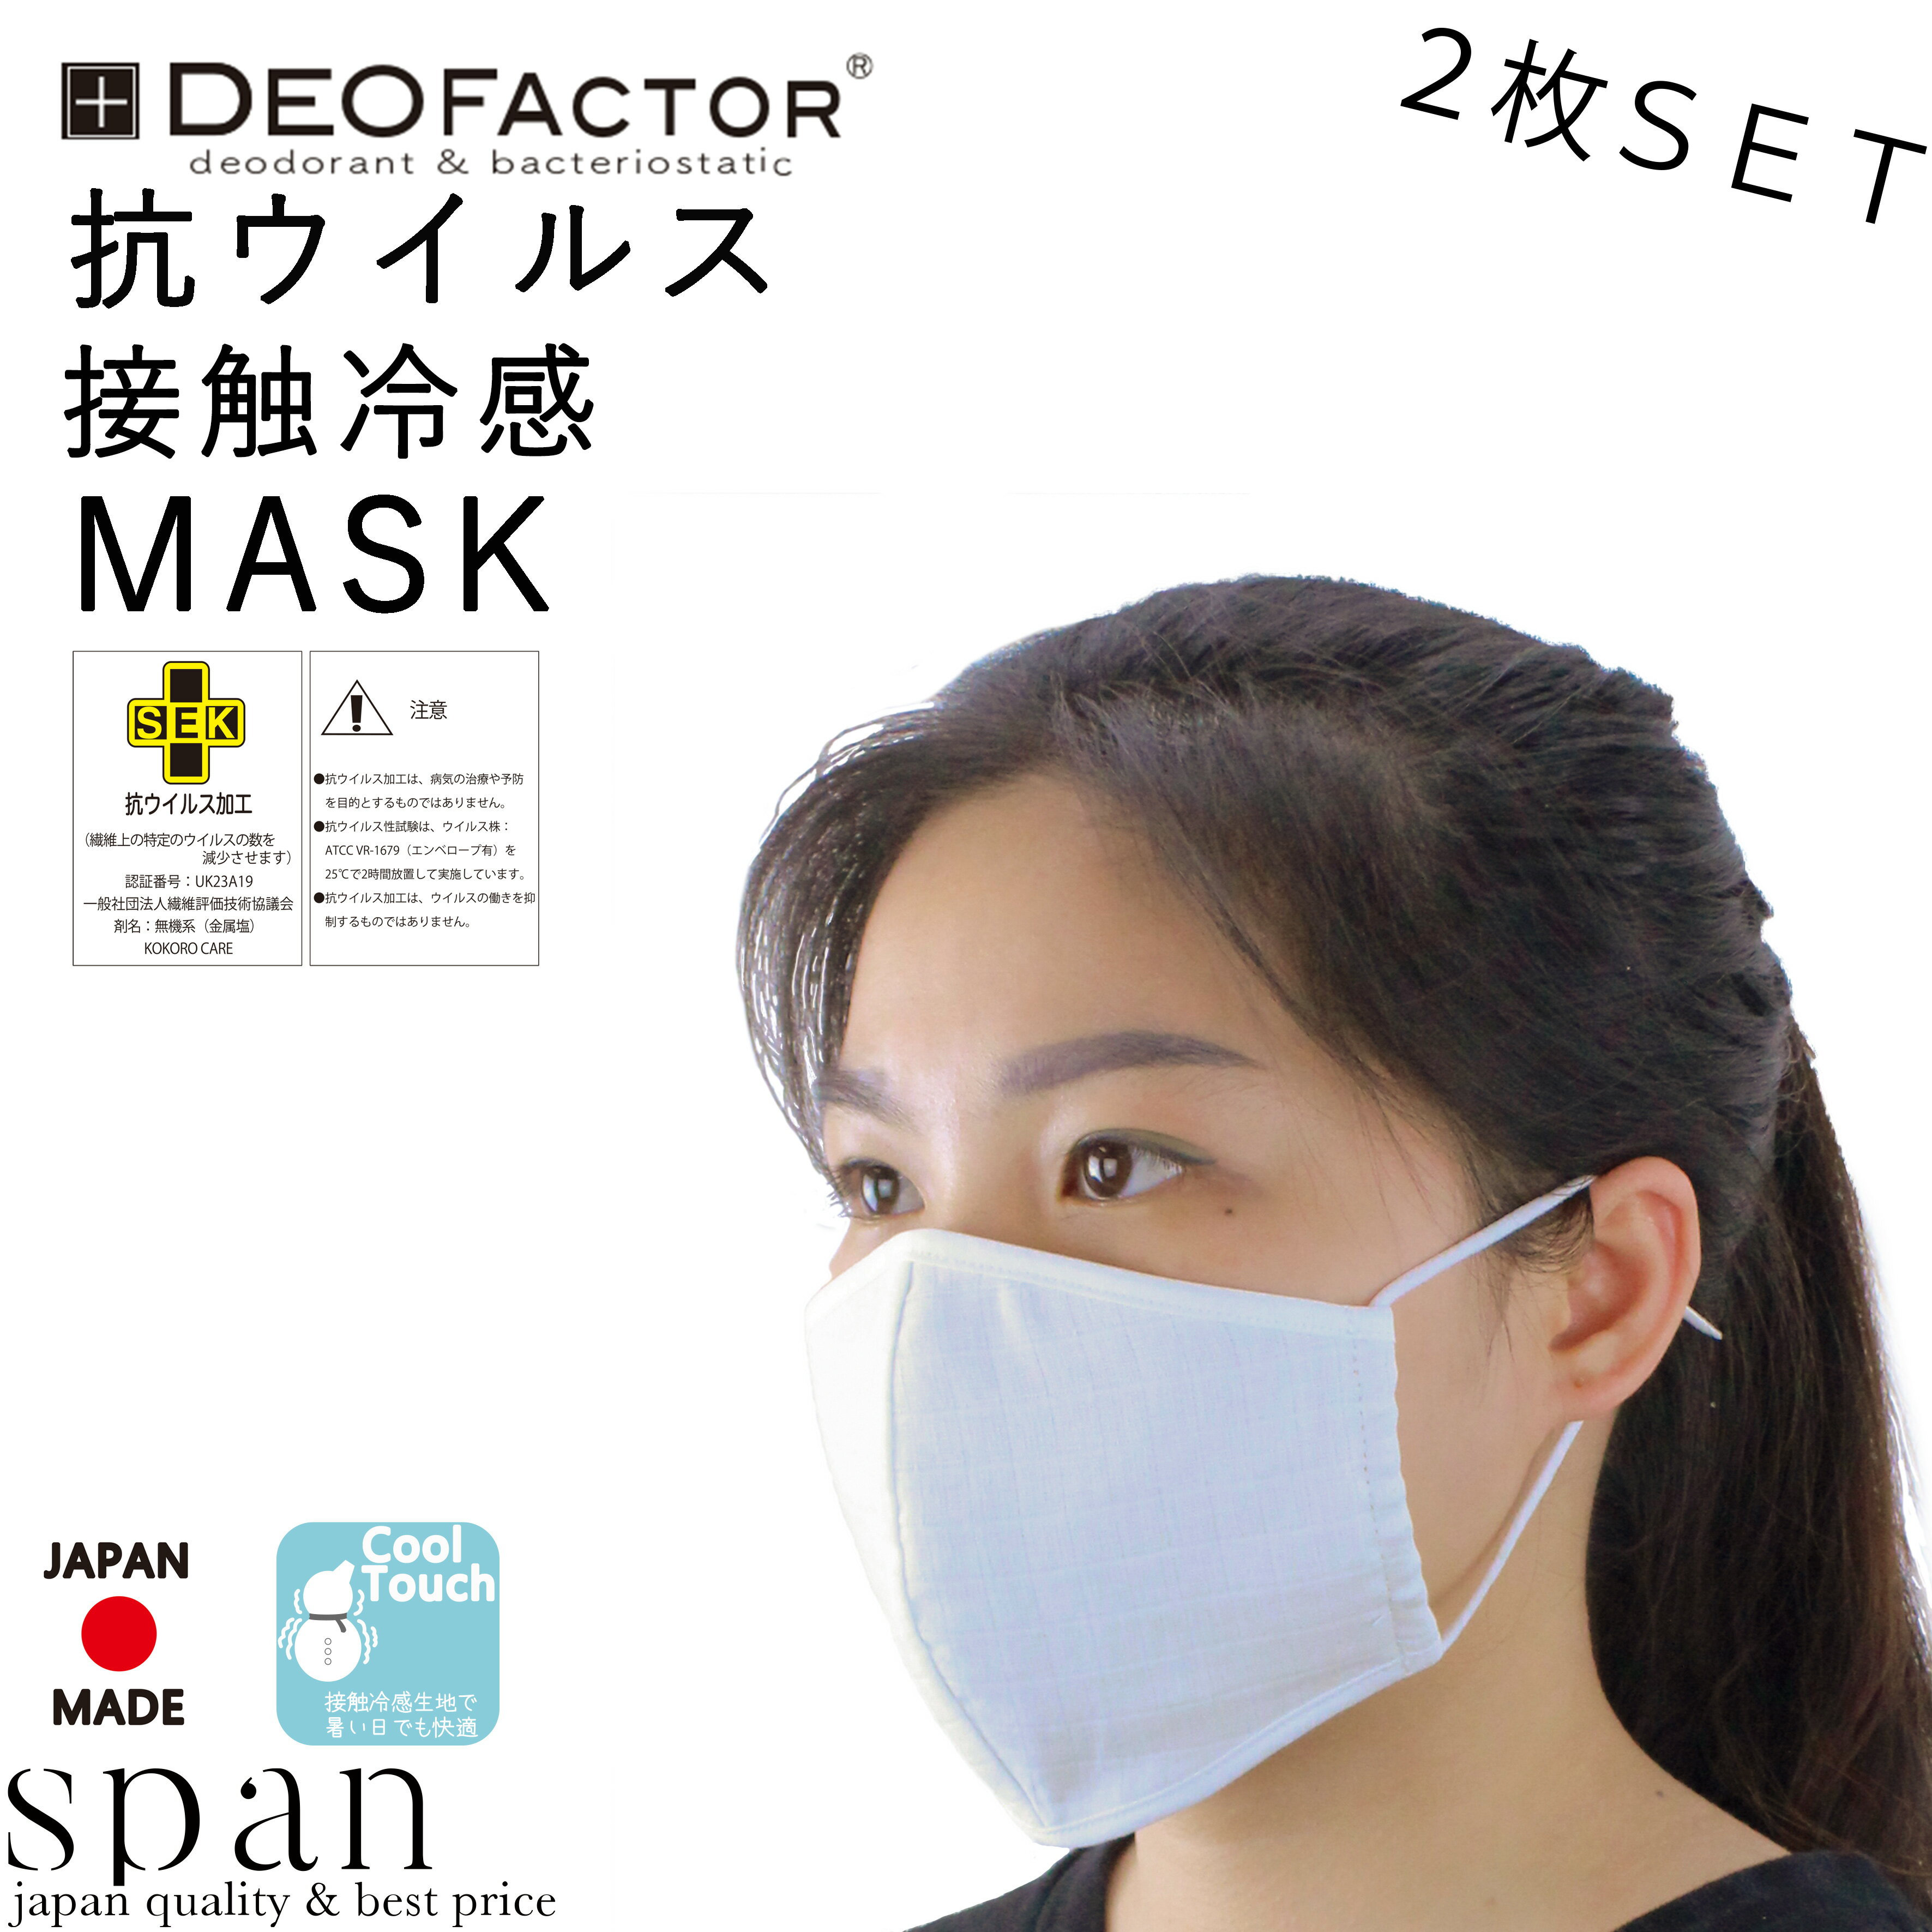 【抗ウイルス、接触冷感生地】表側に抗ウイルスのチェック生地、内側に接触冷感生地を使用した、洗って繰り返し使用できるマスク【日本製】